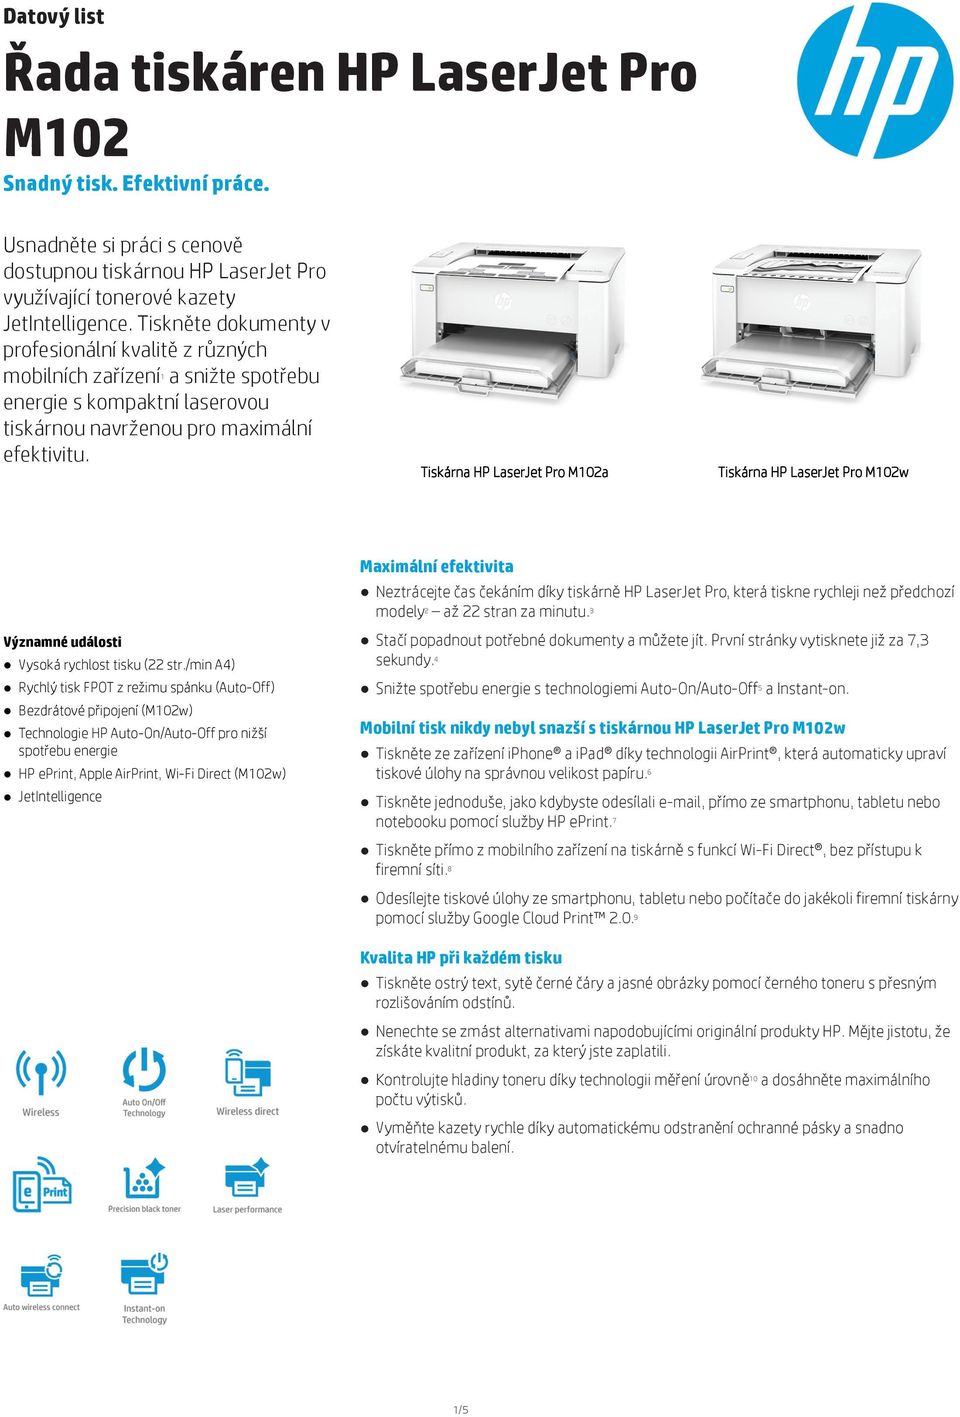 Tiskárna HP LaserJet Pro M02a Tiskárna HP LaserJet Pro M02w Maximální efektivita ztrácejte čas čekáním díky tiskárně HP LaserJet Pro, která tiskne rychleji než předchozí modely2 až 22 stran za minutu.